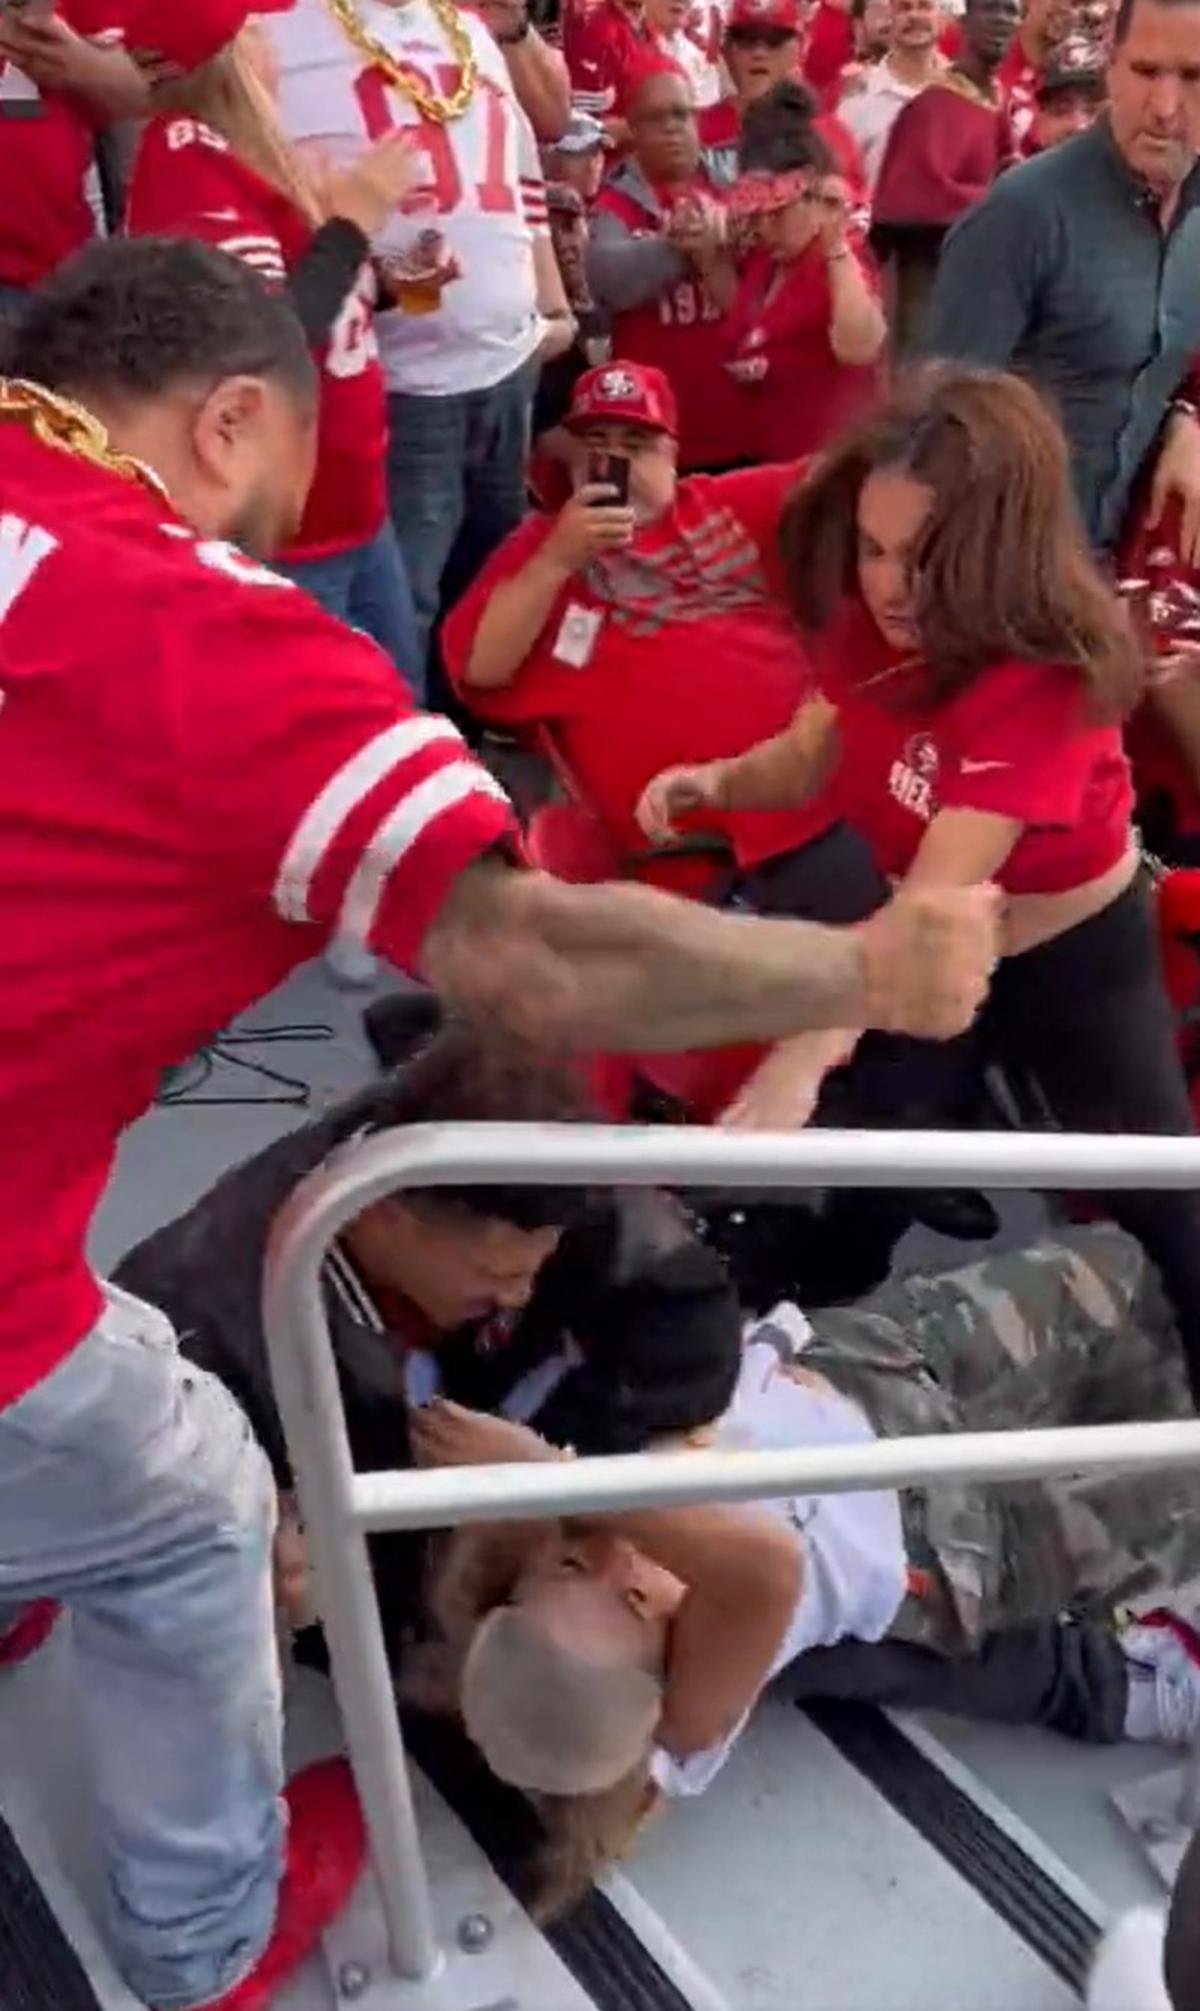 Los fans de los 49ers se tornaron en una pelea. | Especial